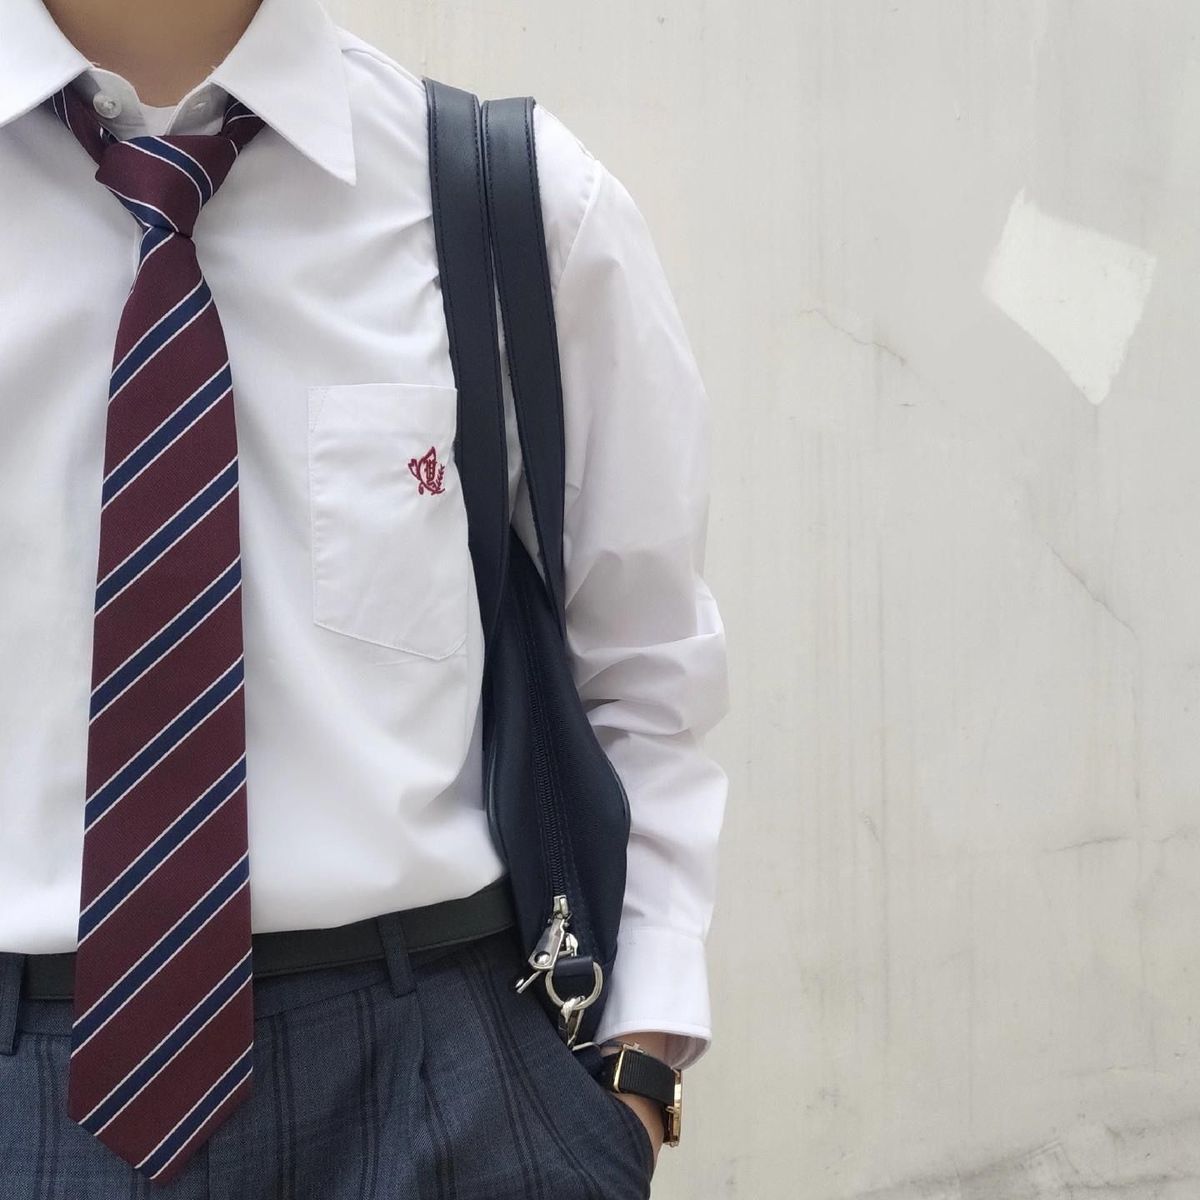 校供感日系JK领带女配件装饰dk制服领结手打学院风酒红色条纹领带